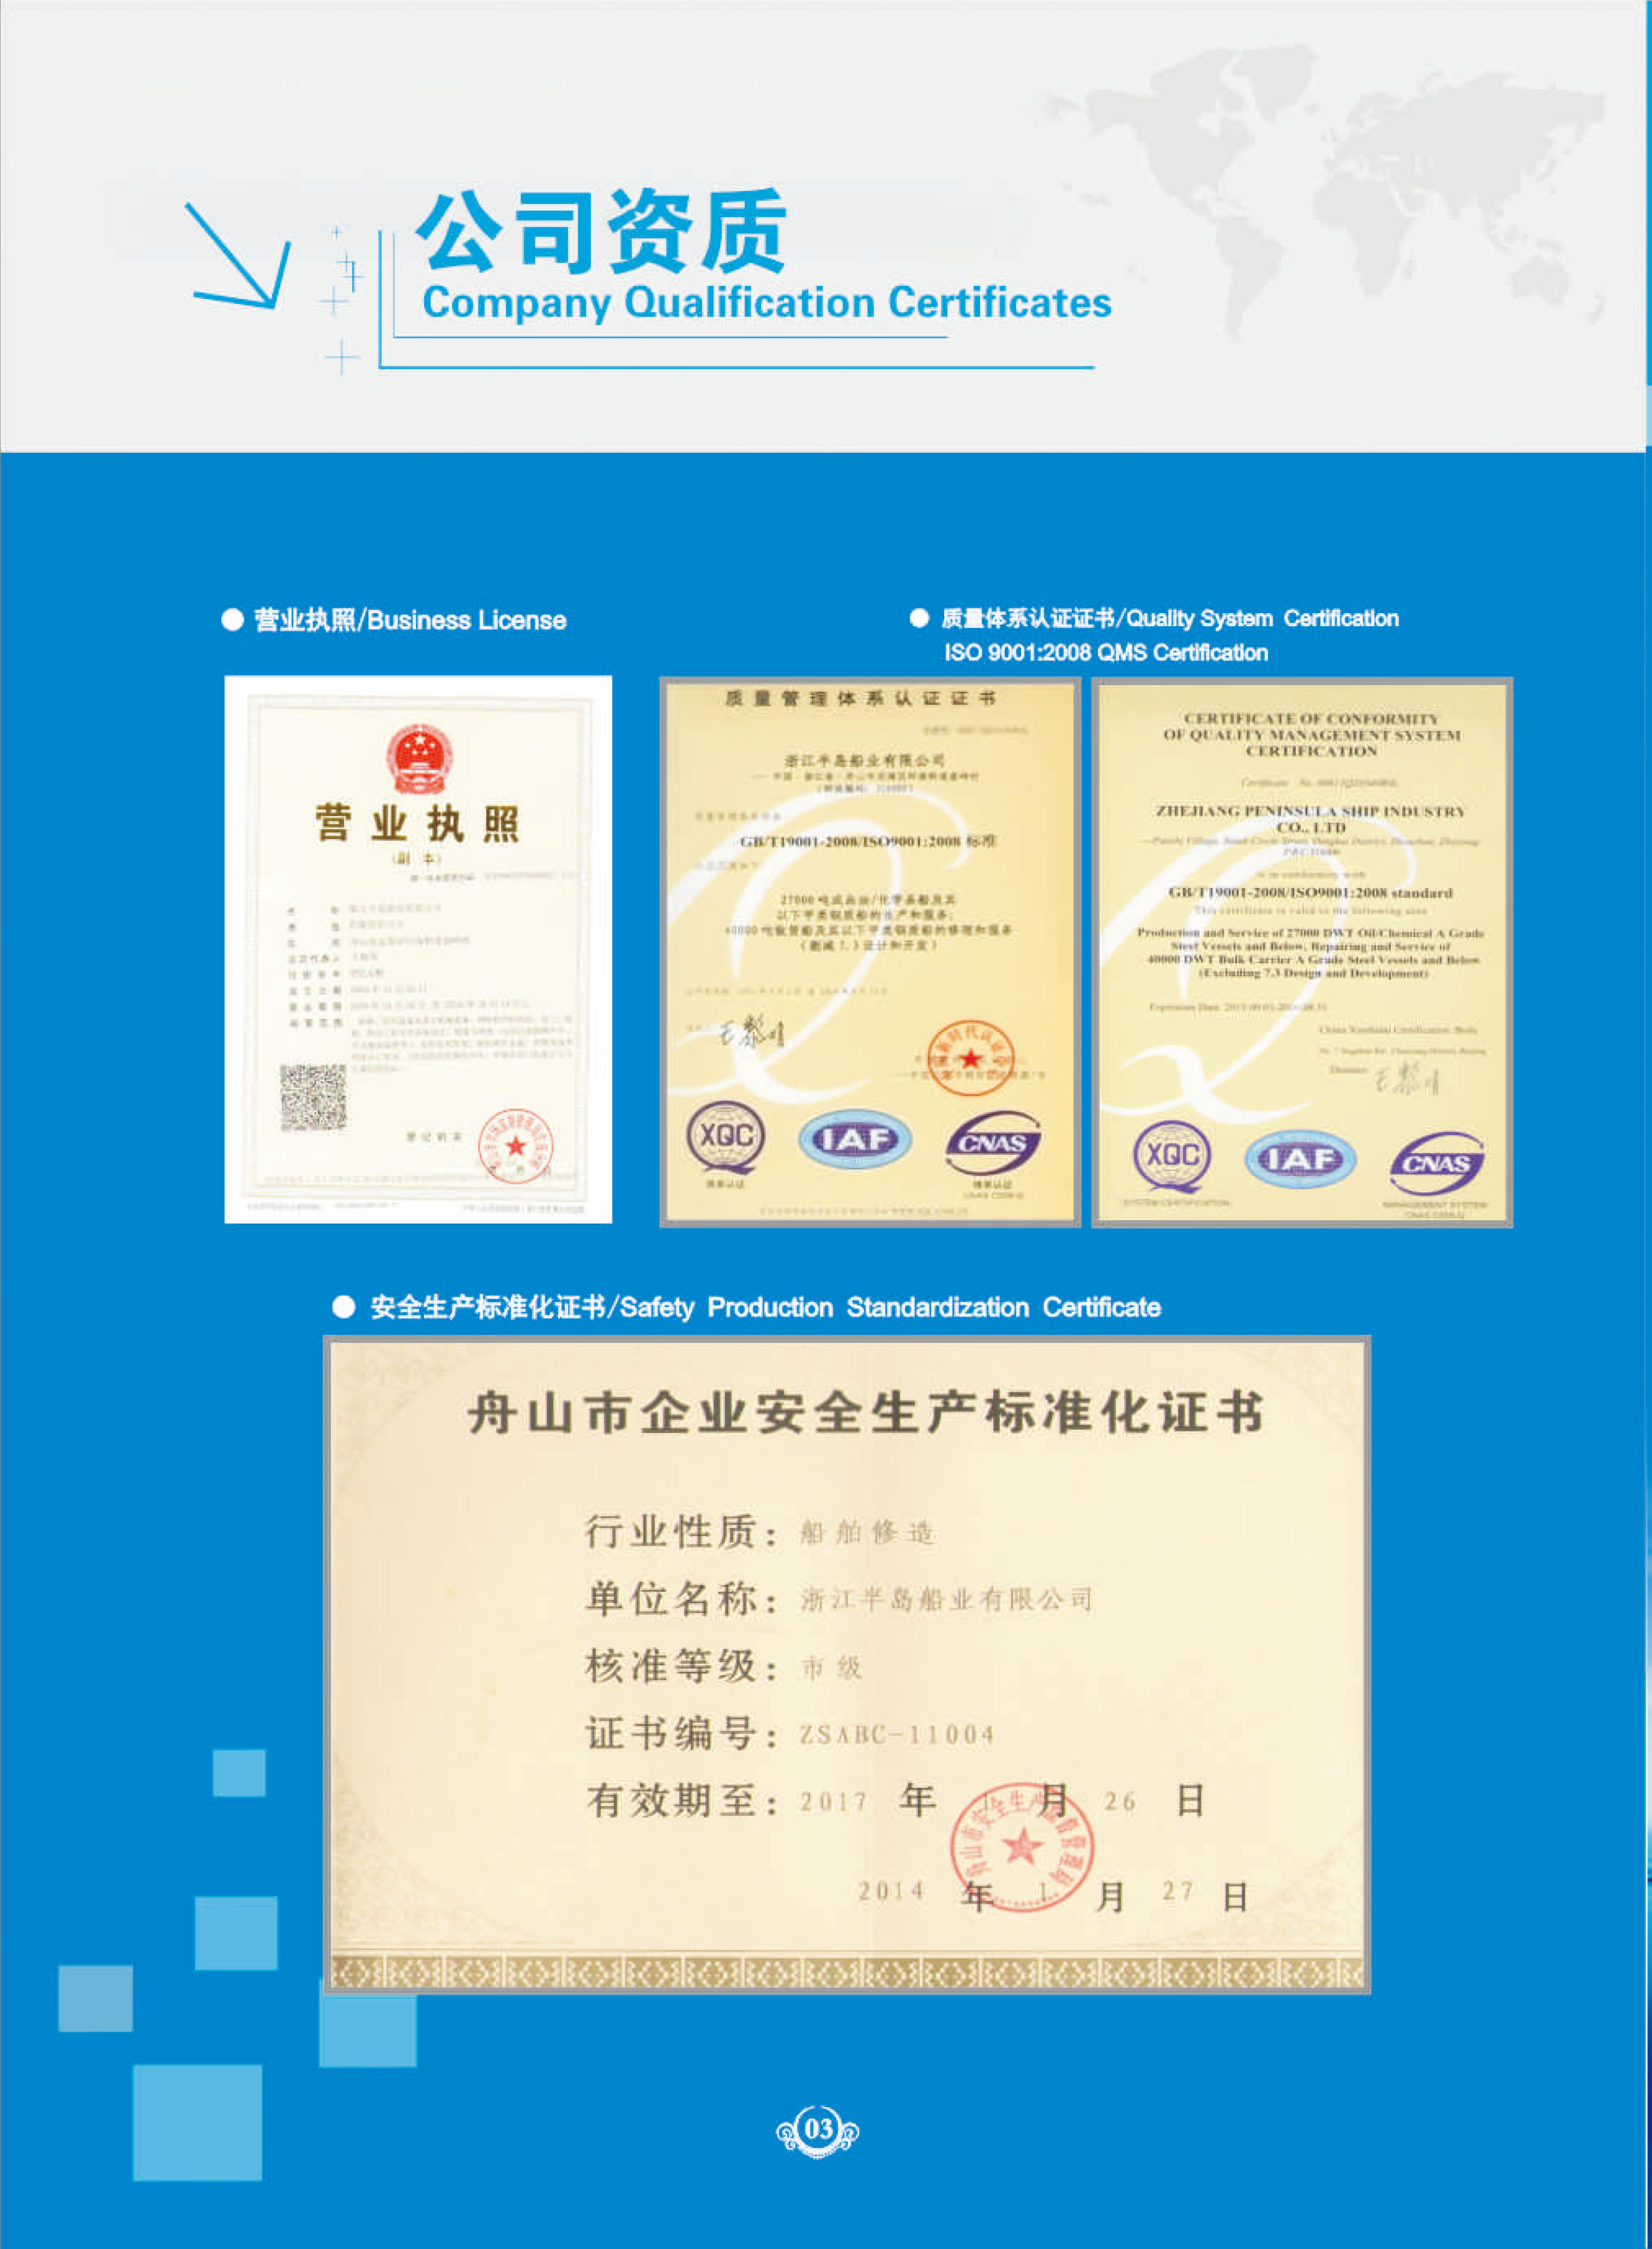 ZheJiang Peninsula Ship Industry Co.，Ltd(图5)